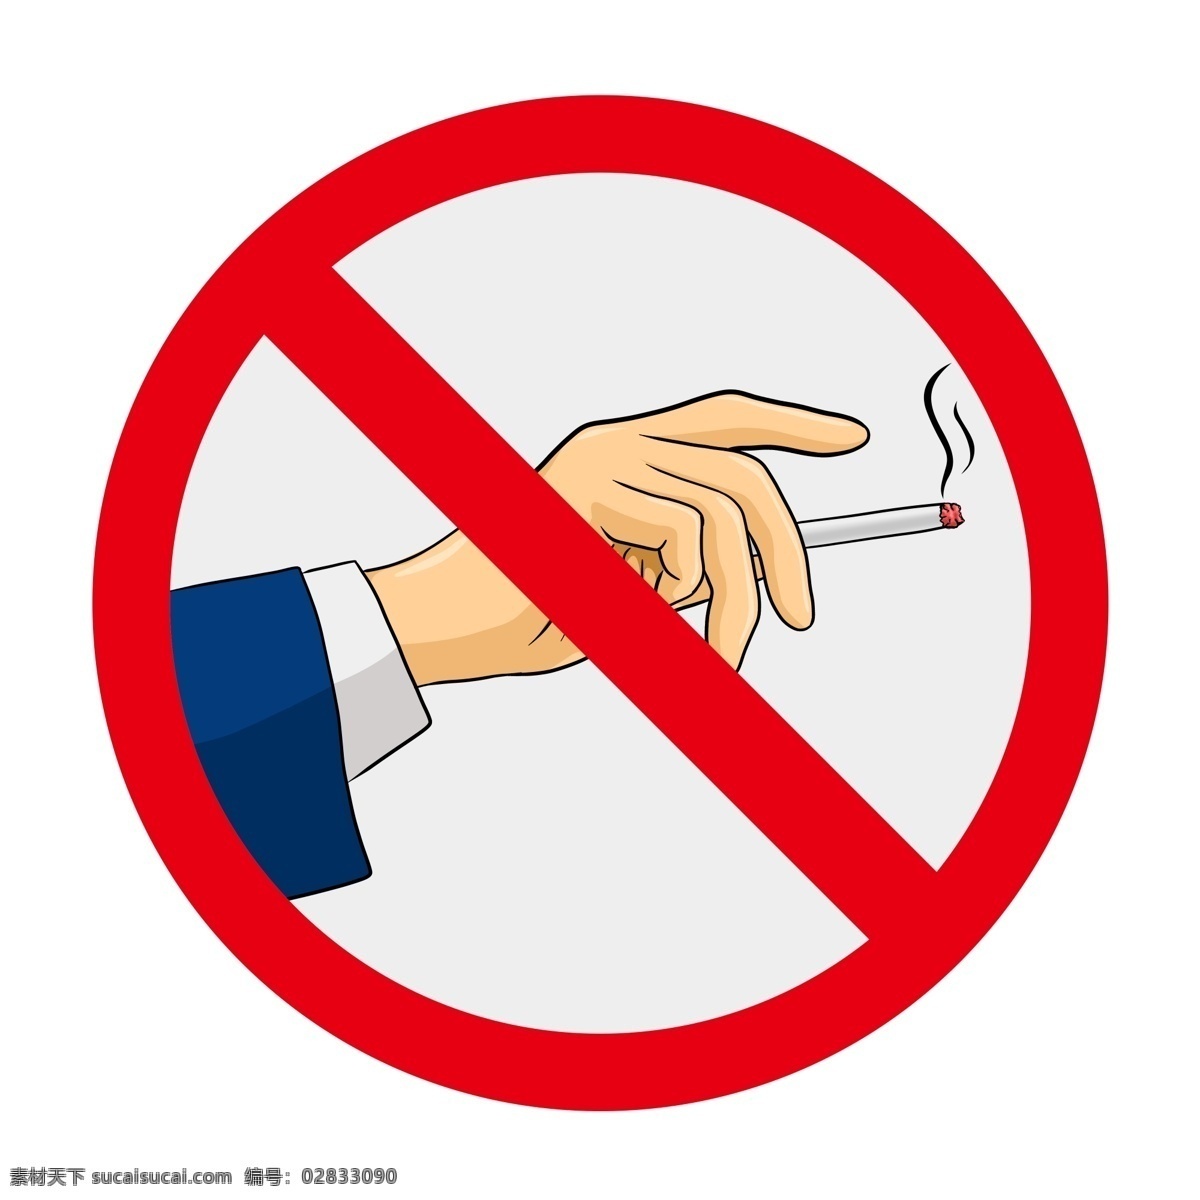 禁止 吸烟 标志 商用 禁止吸烟 禁烟 标识